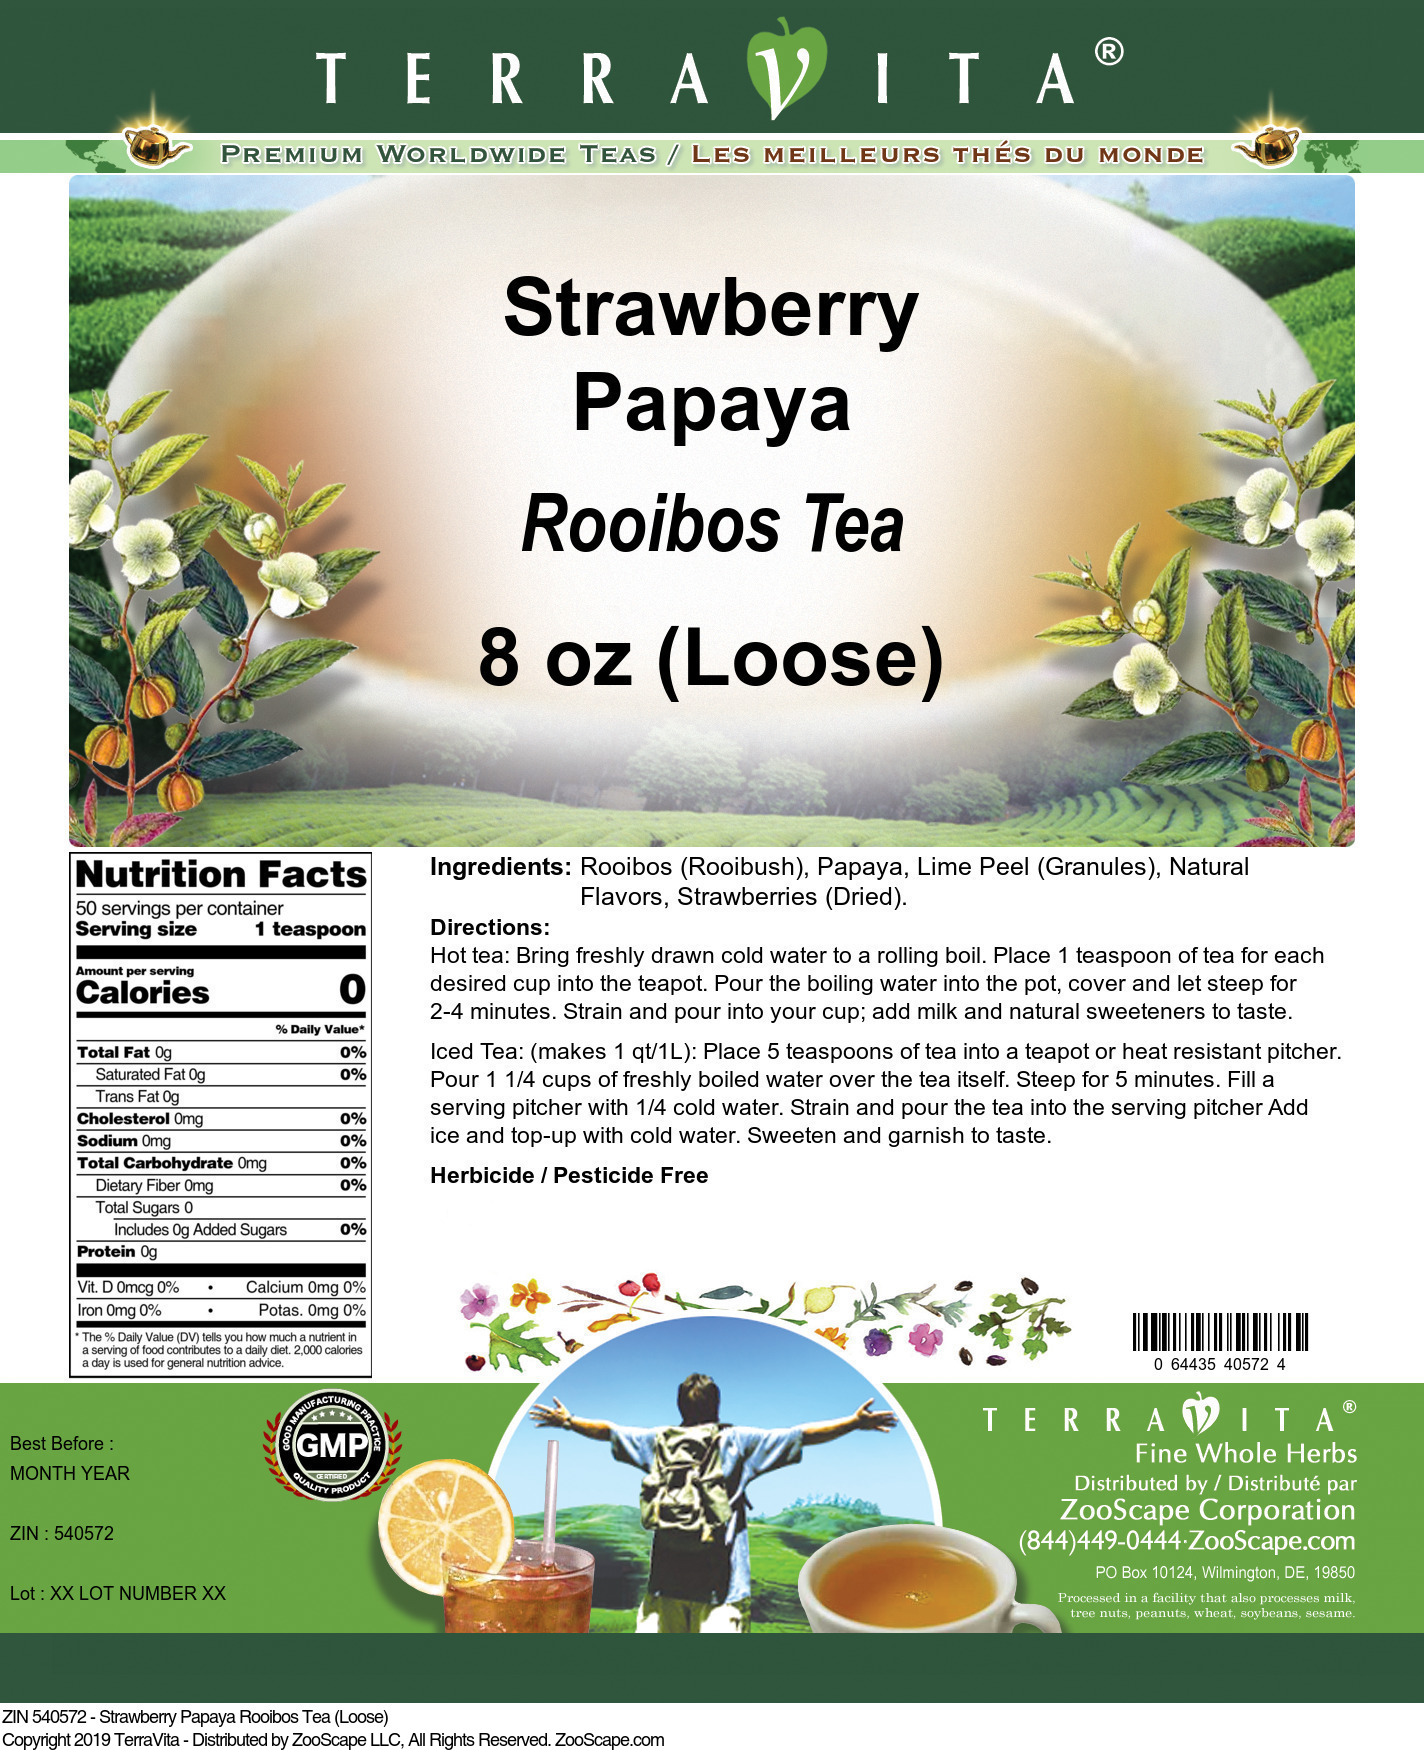 Strawberry Papaya Rooibos Tea (Loose) - Label